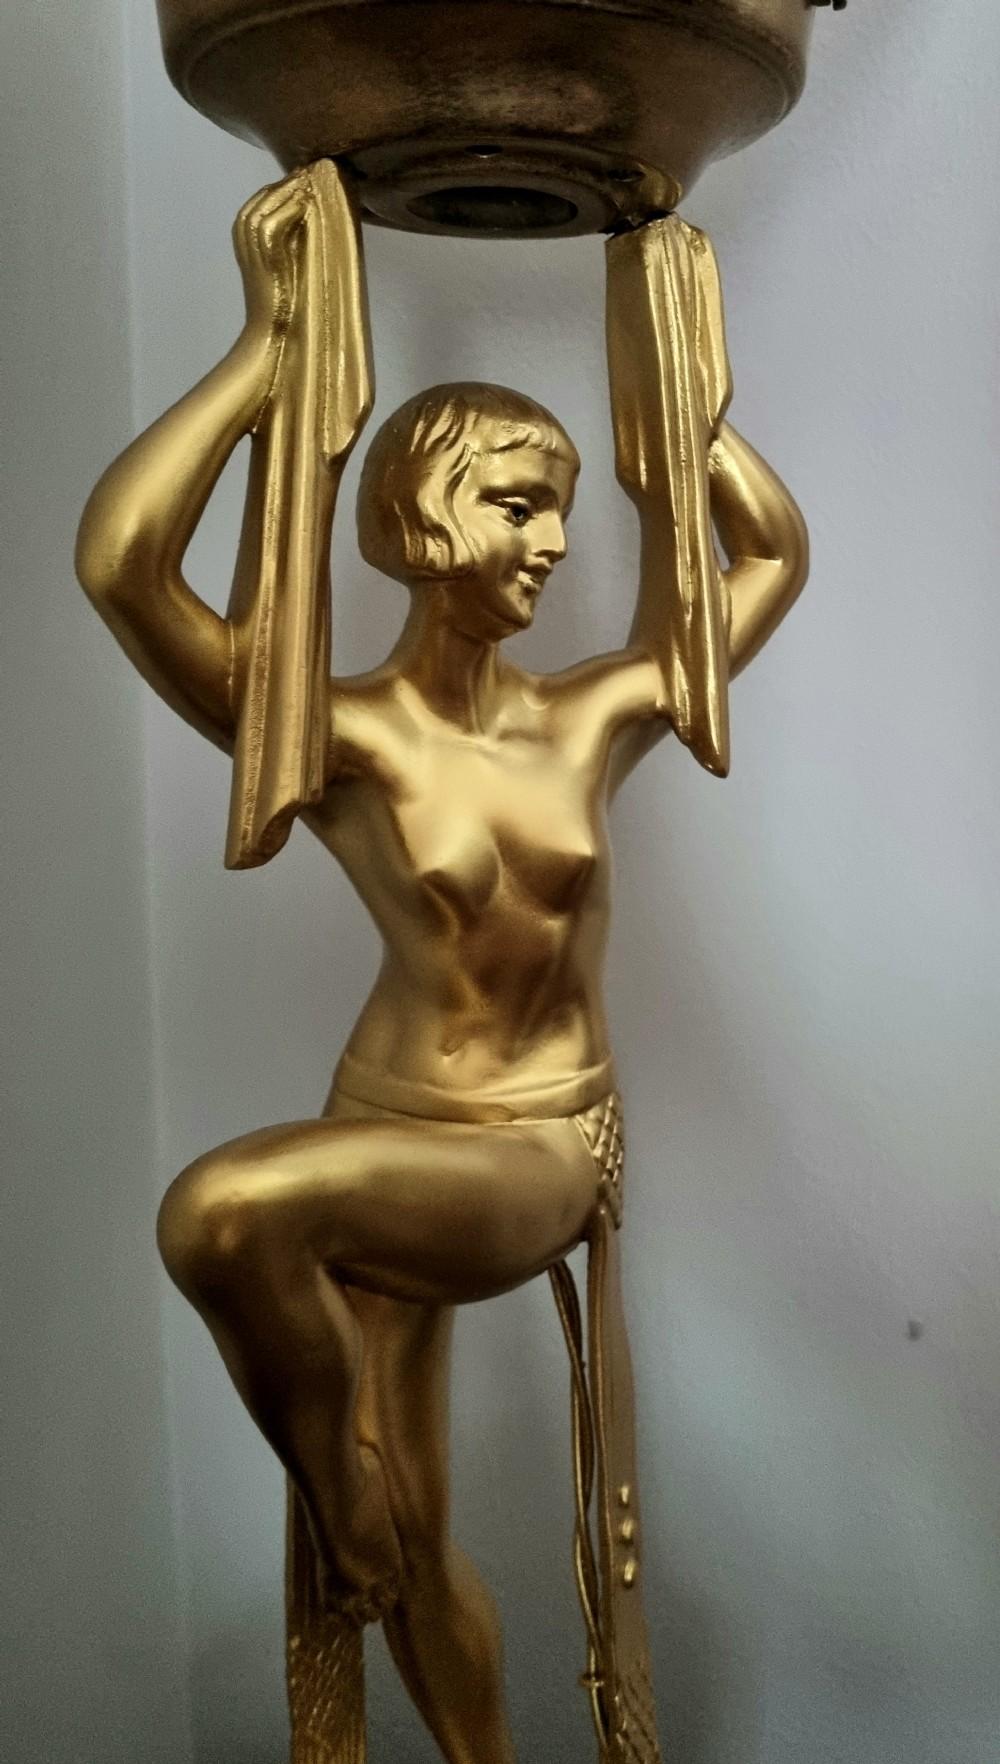  Lampe de table Art Déco des années 1930,
Dame nue dansant sur un socle en marbre et onyx , signé Limousin . En bon état de marche, avec des signes d'âge et d'utilisation.
67 cm de haut x 19,5 cm de large, globe compris, prise UK. 